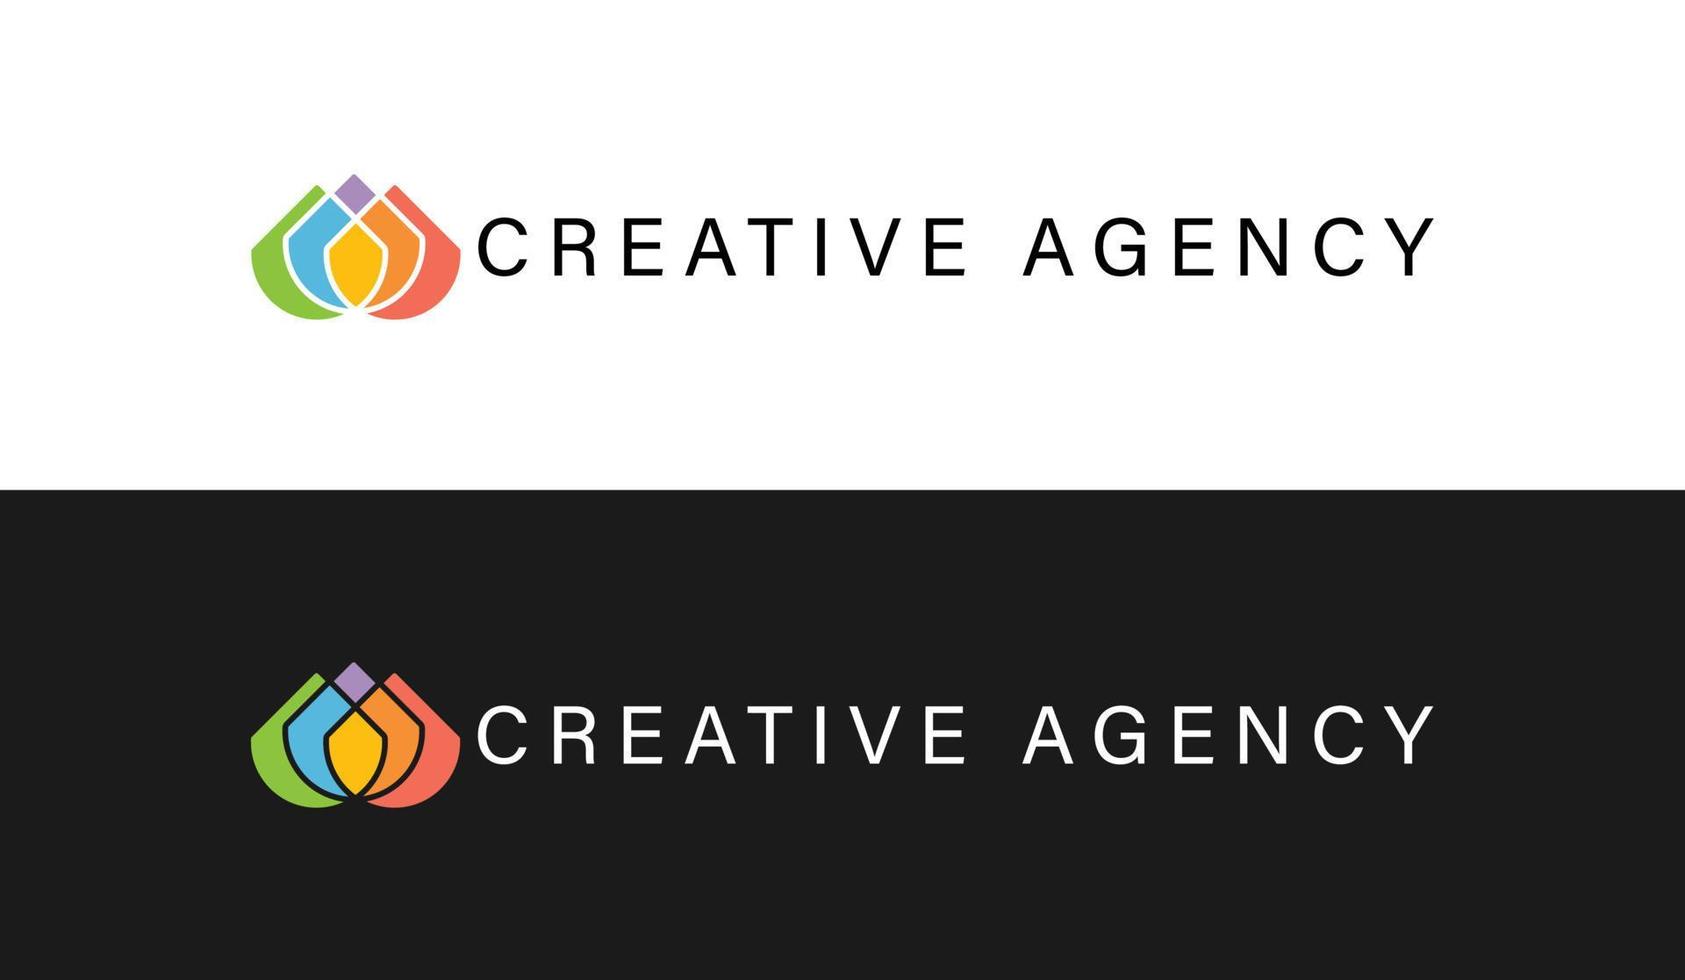 creative agency company logo vector